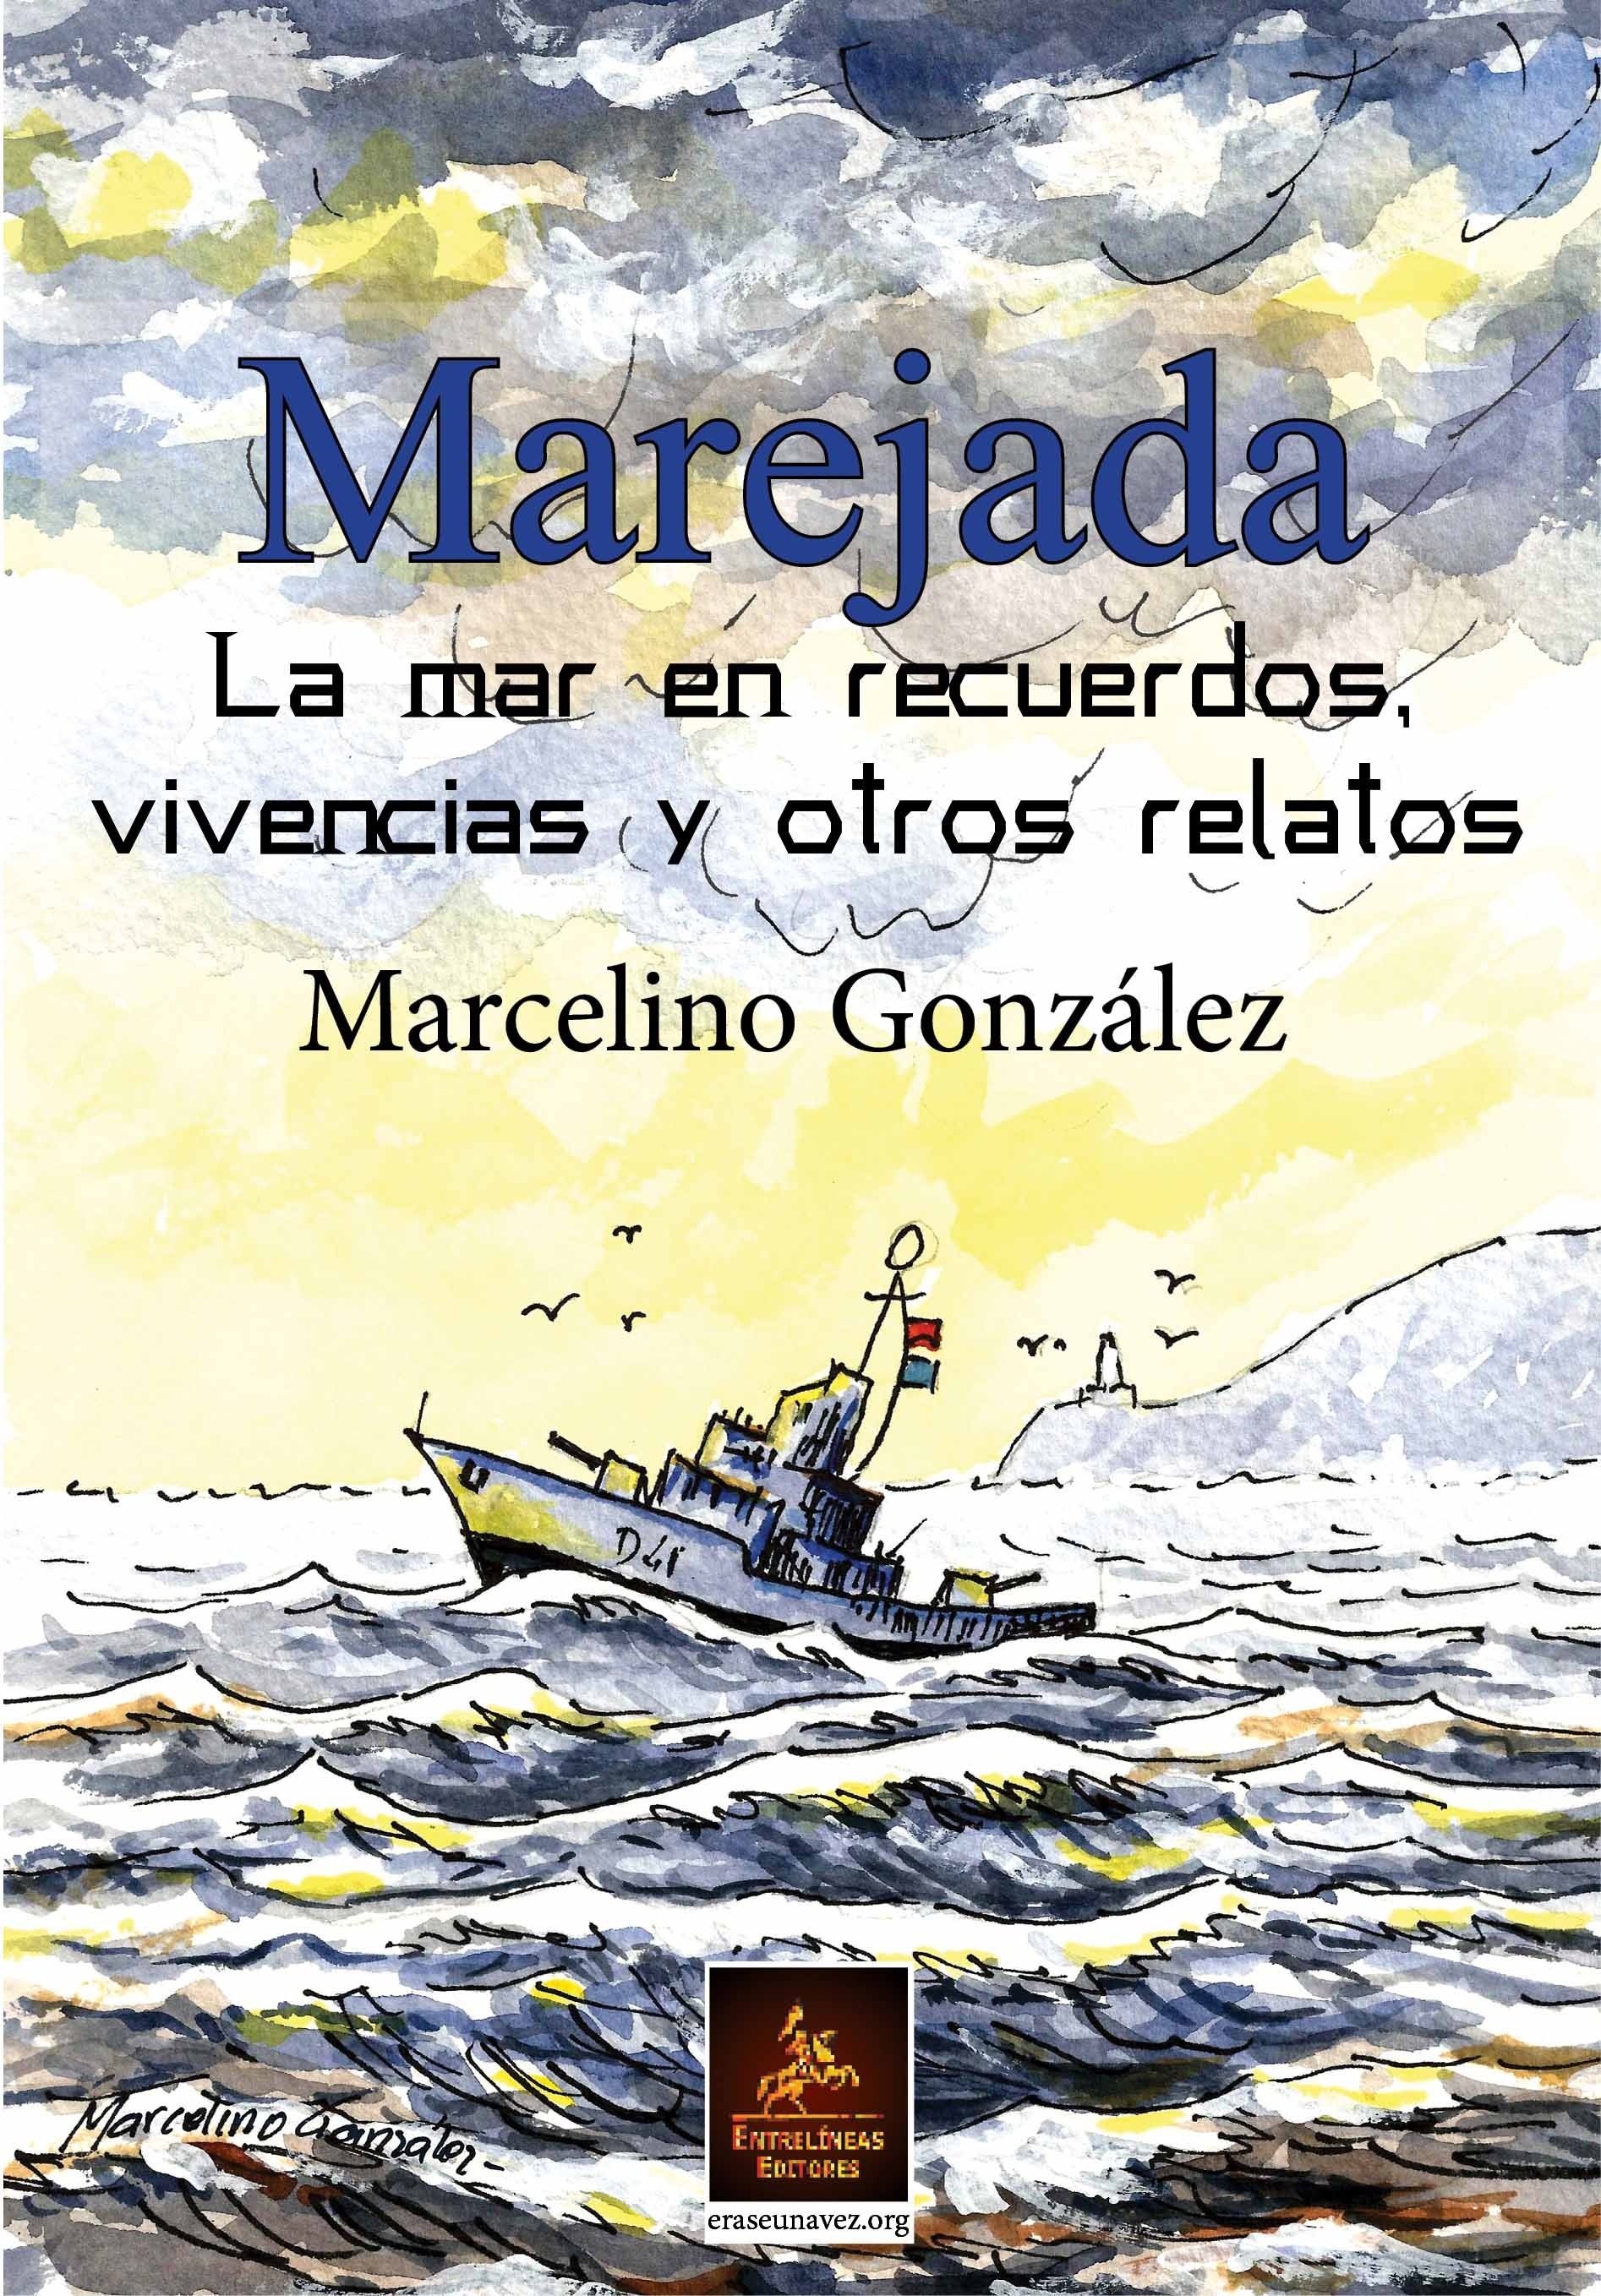 Marejada "La mar en recuerdos, vivencias y otros relatos"